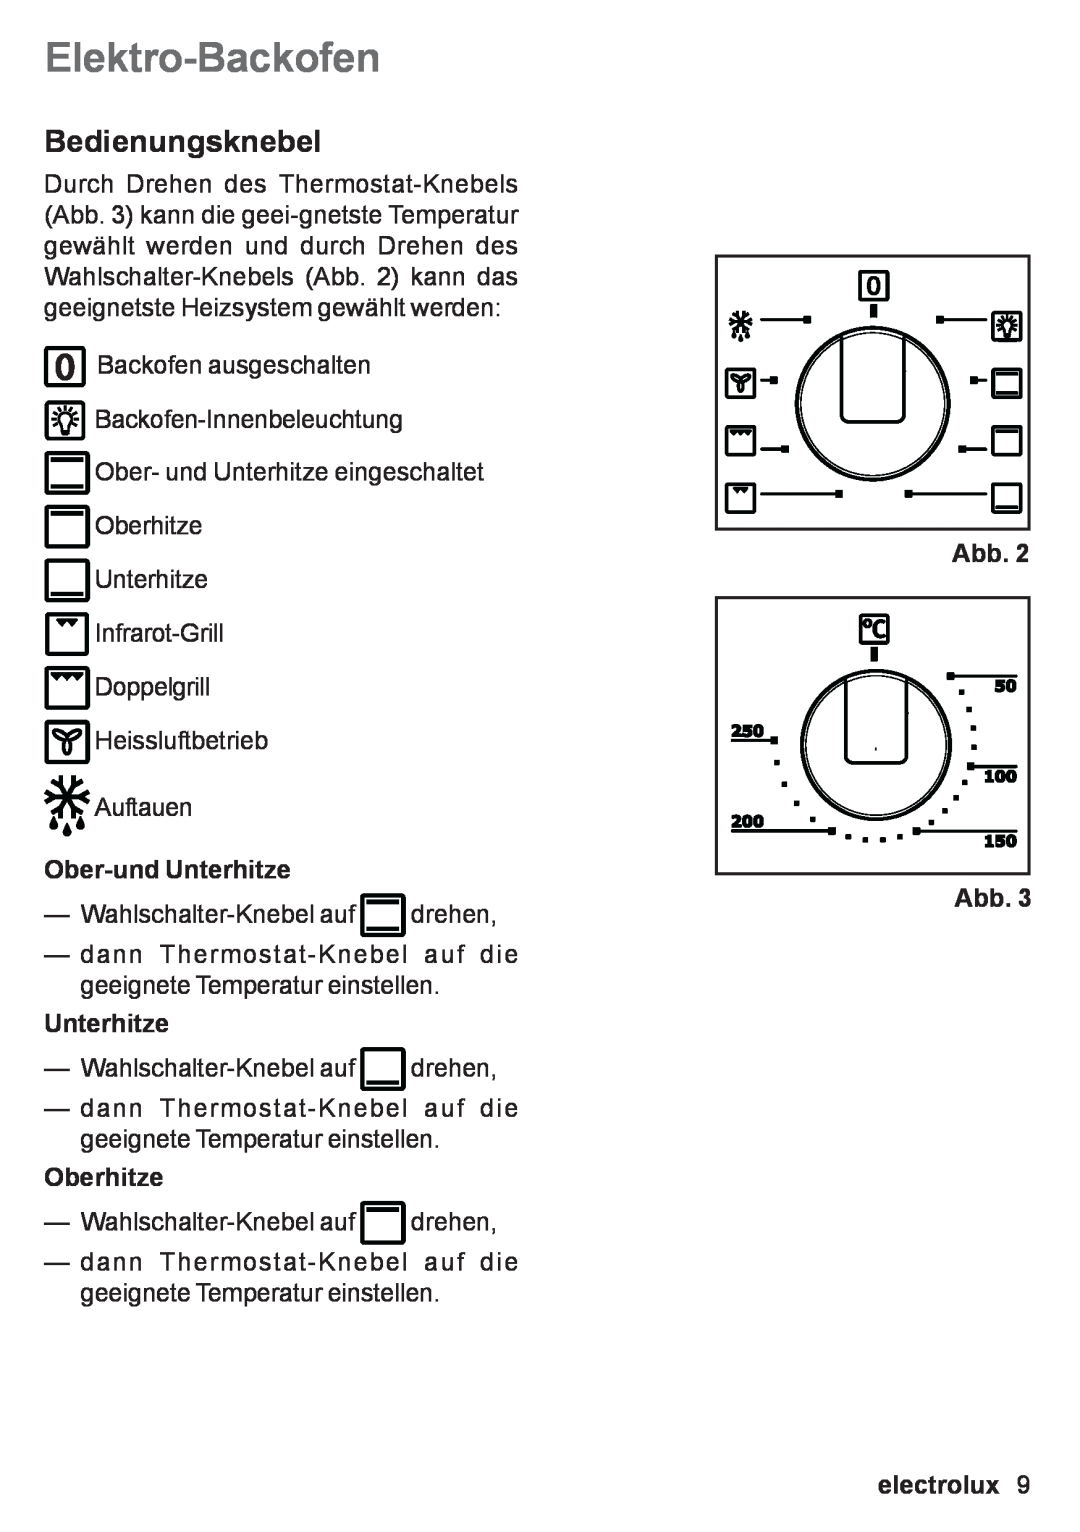 Electrolux EOB 53003 user manual Elektro-Backofen, Bedienungsknebel, Ober-und Unterhitze, Oberhitze, Abb Abb, electrolux 